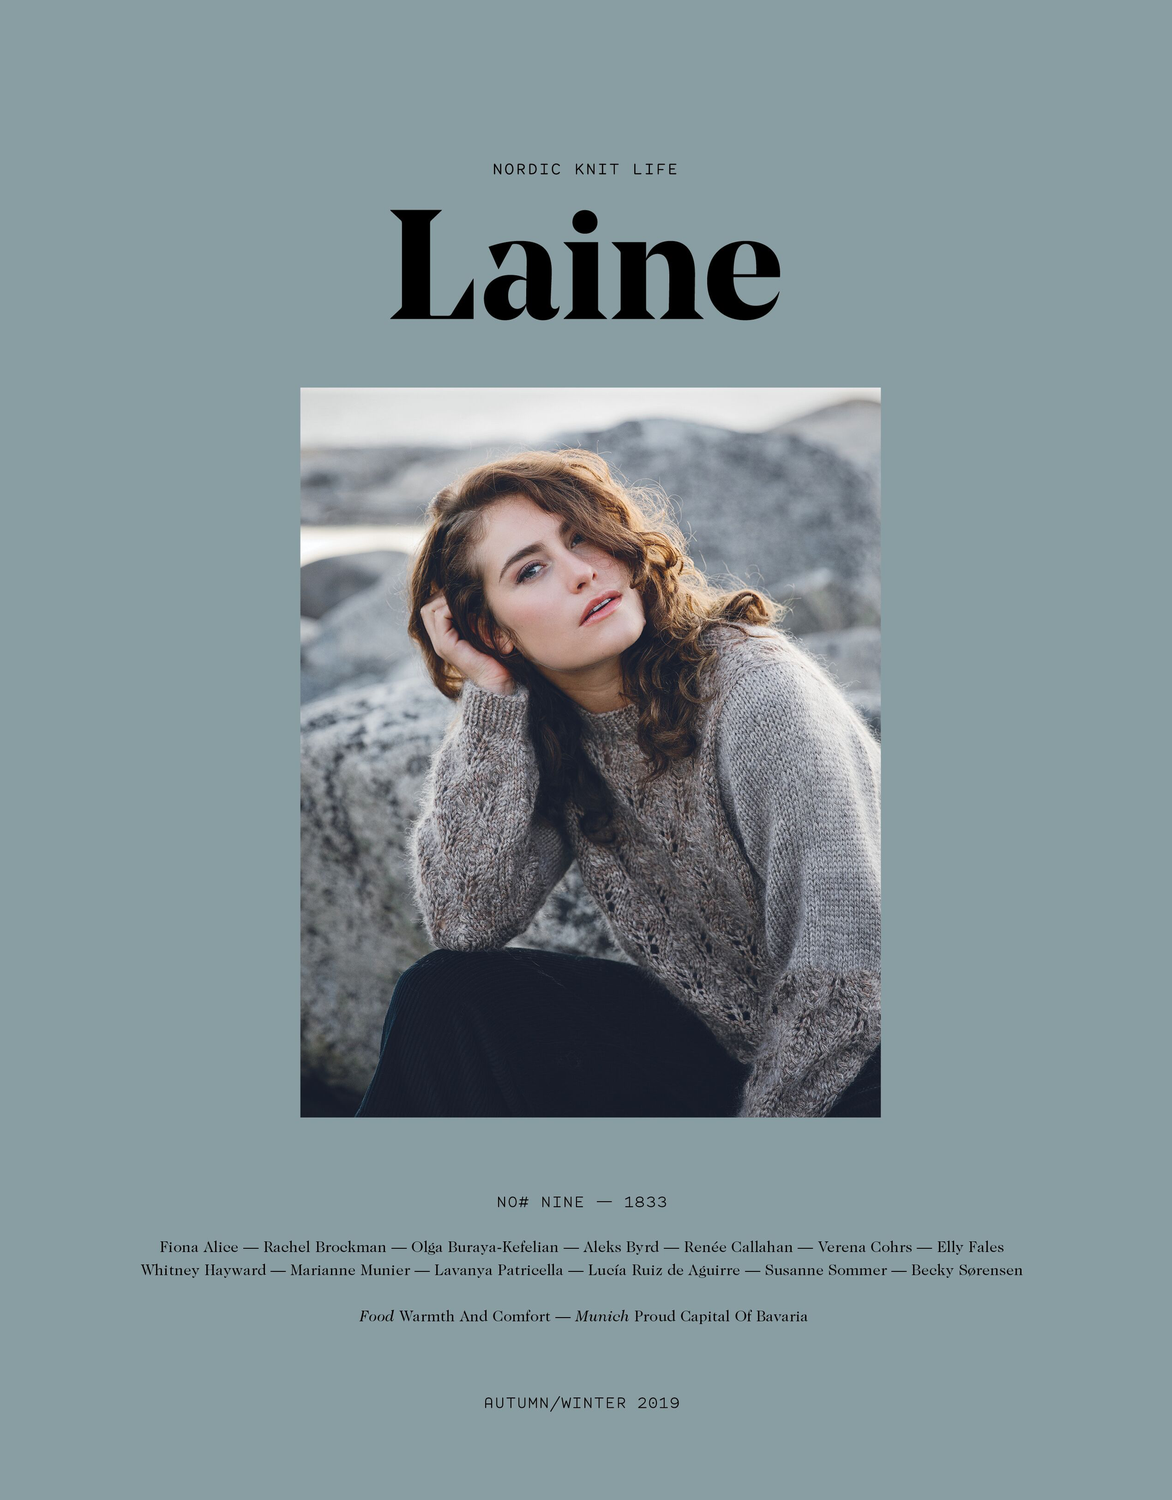 Laine Magazine Vol. 9